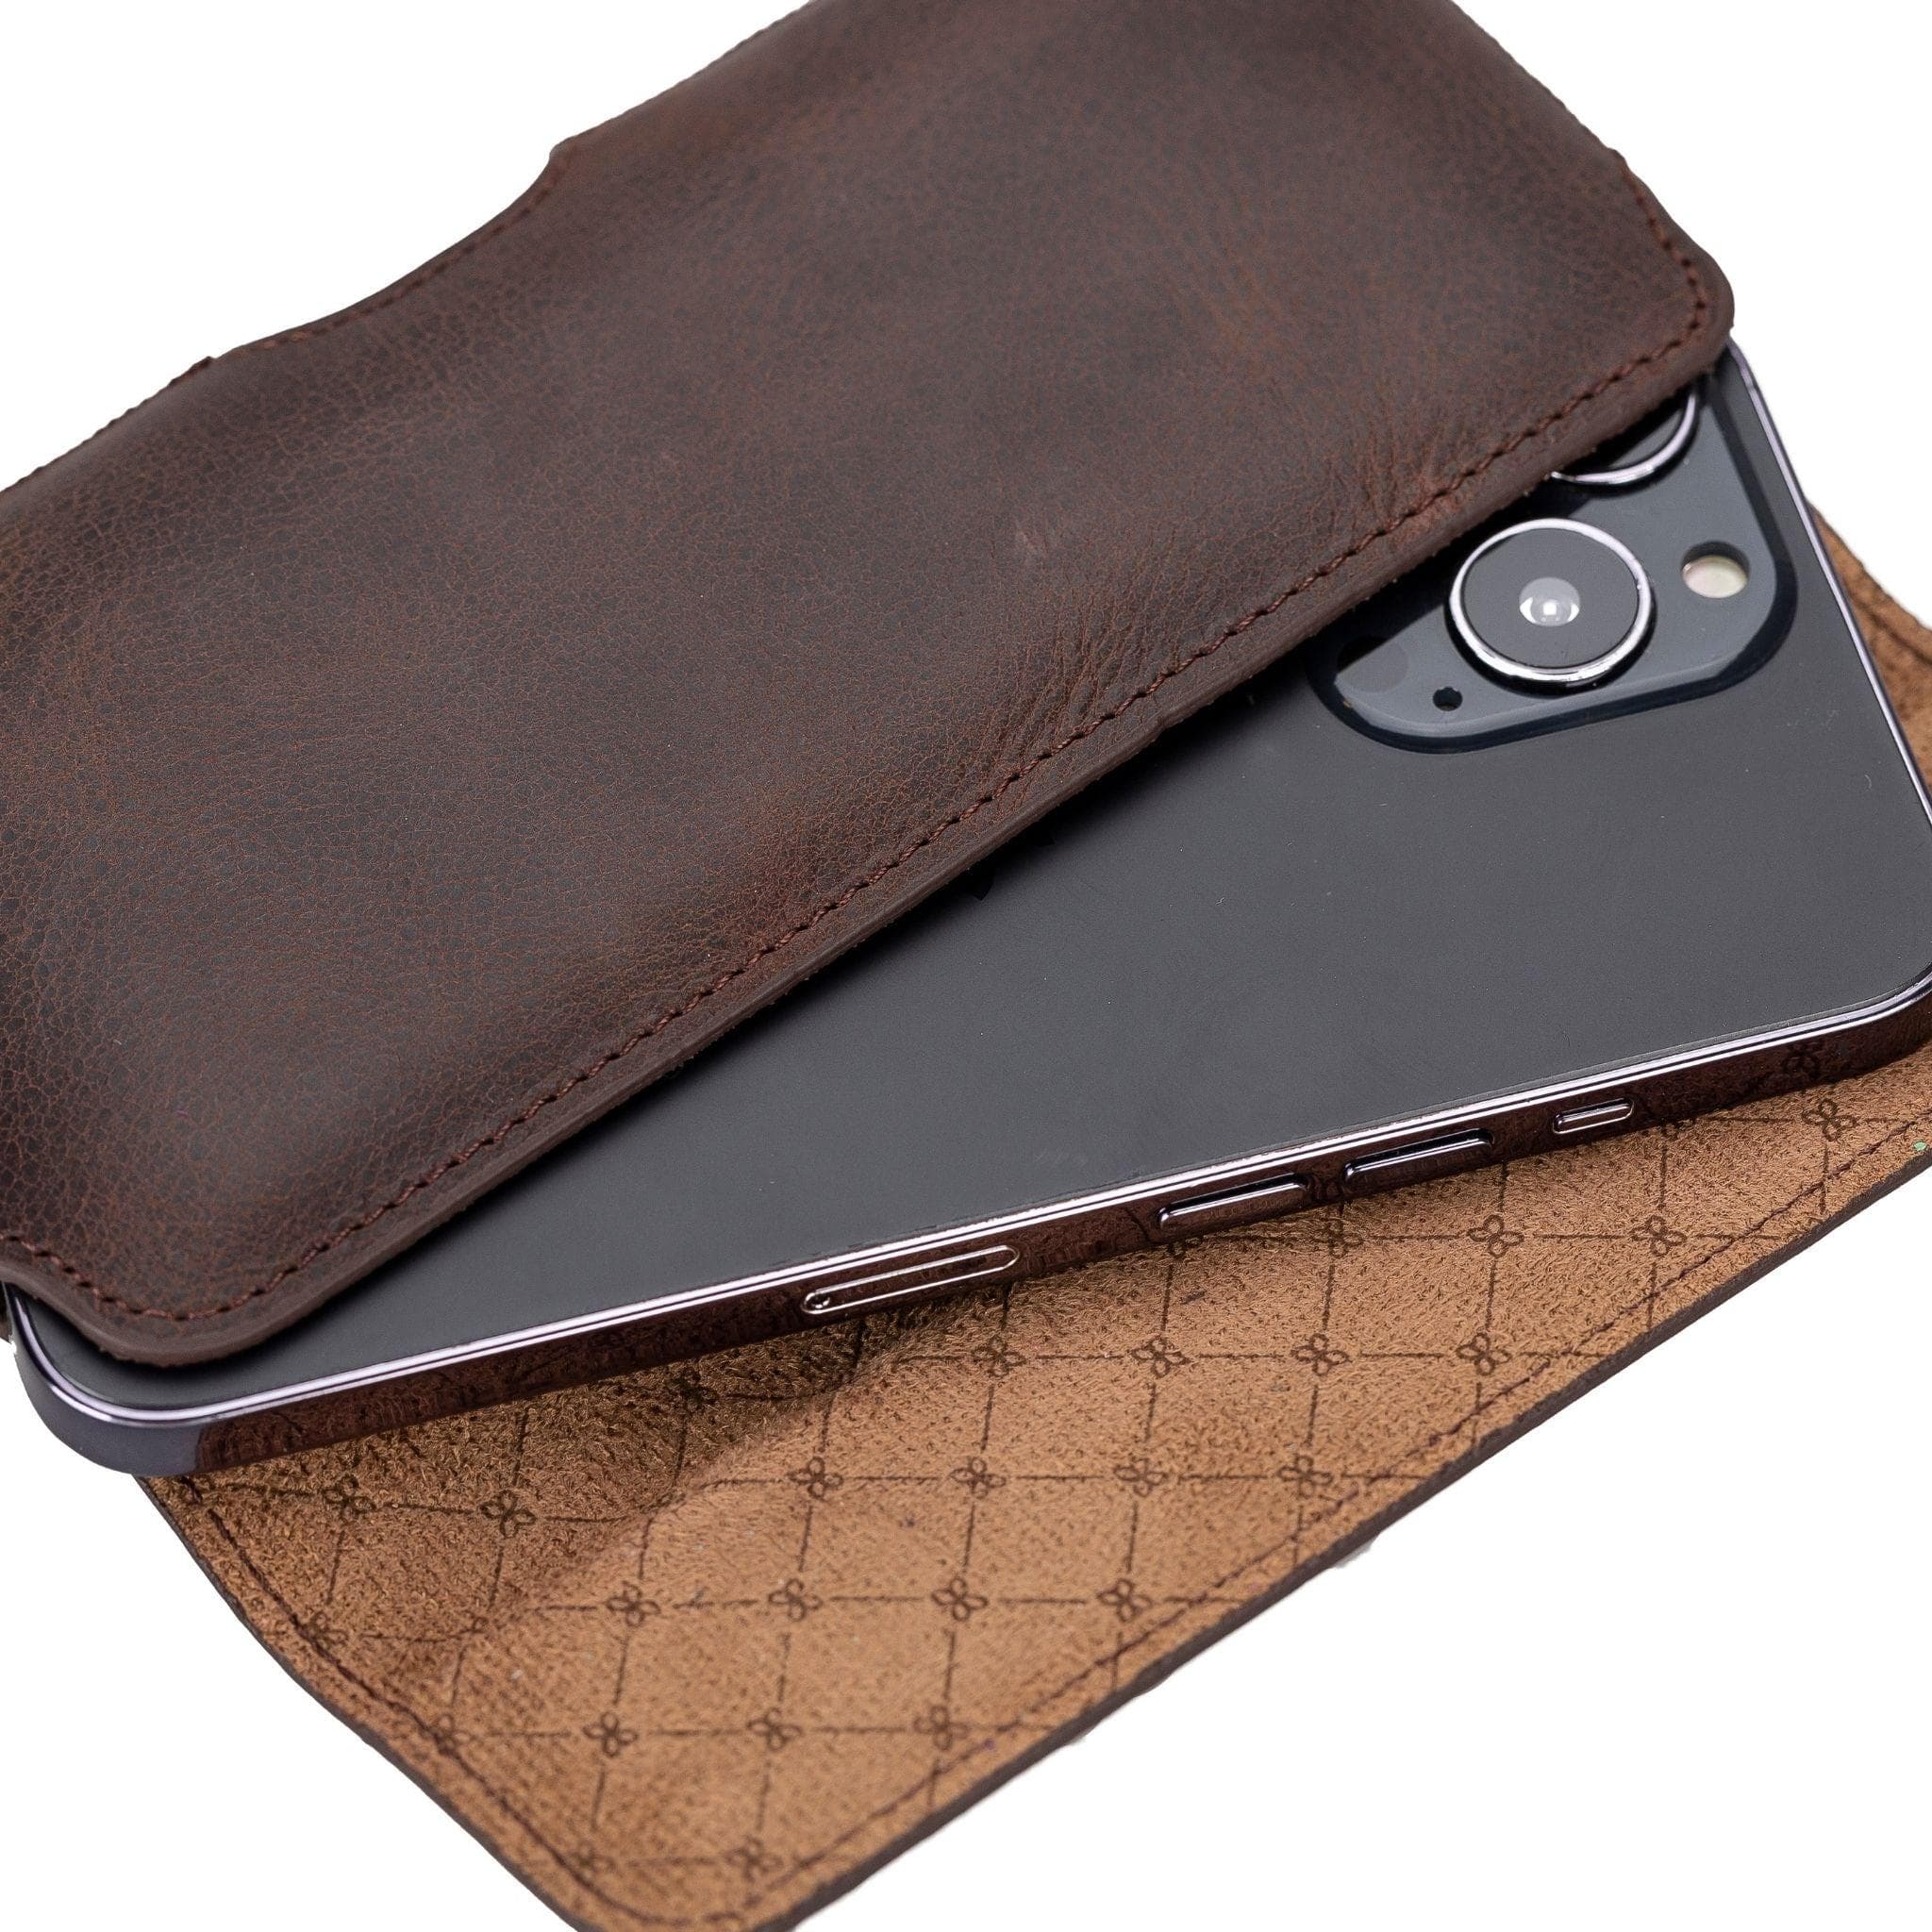 Boulett Aslant, Waist Belt Attachable Leather Case for Men Bouletta